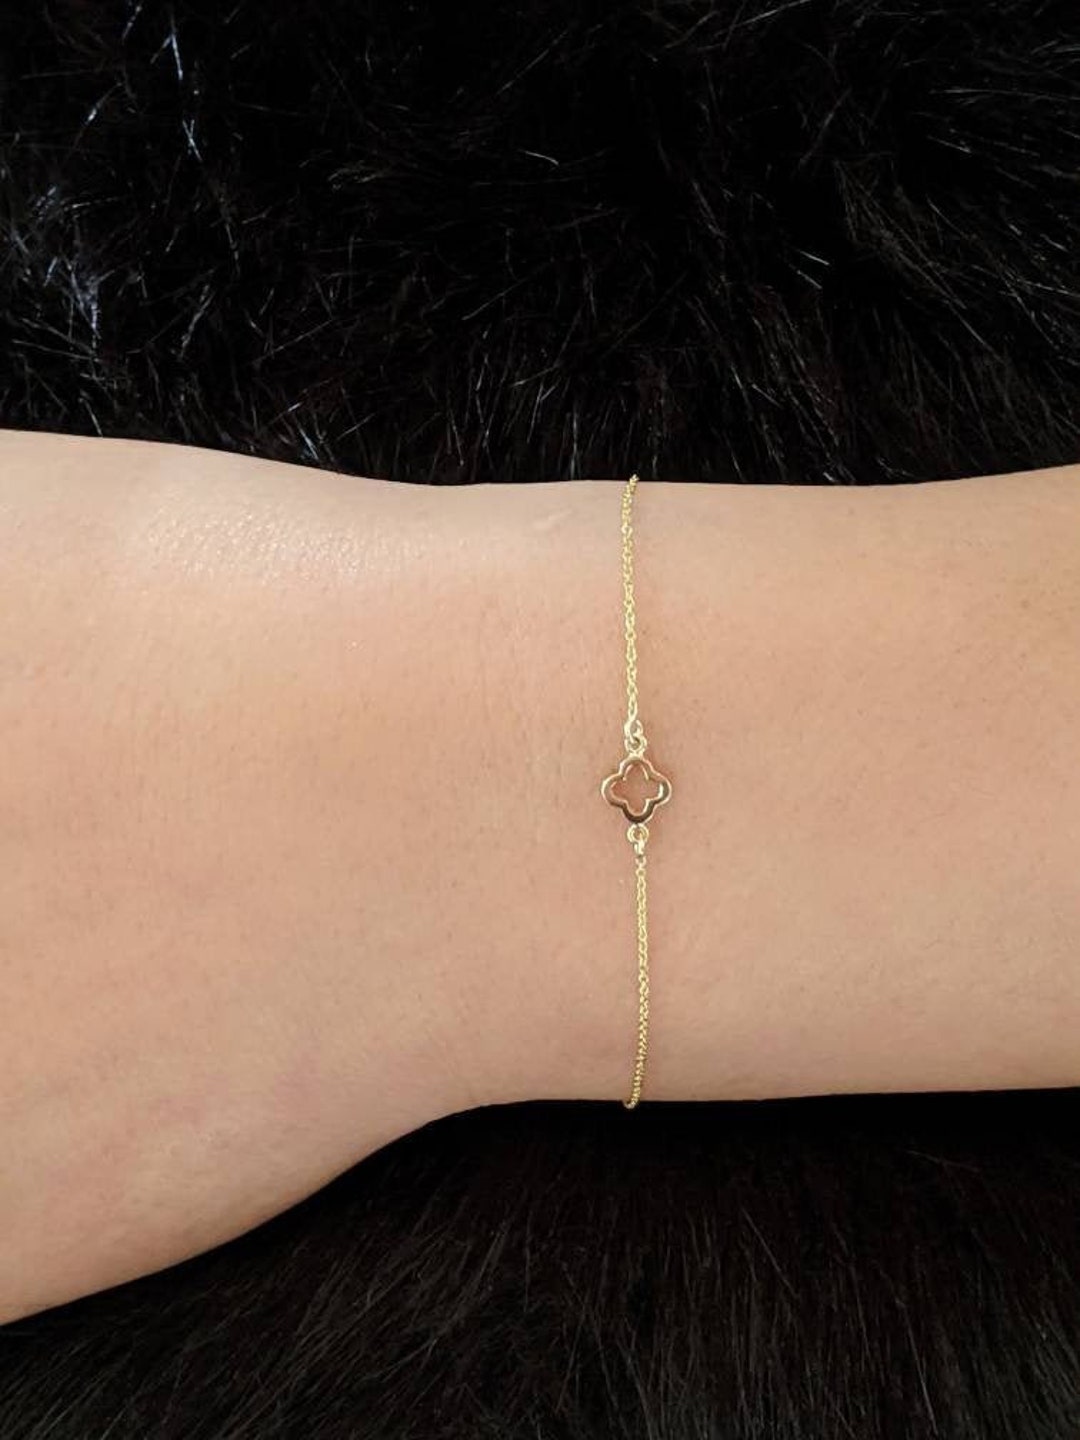 Four Leaf Clover Charm Bracelet & Anklets 14k Gold / Solid - Etsy Canada